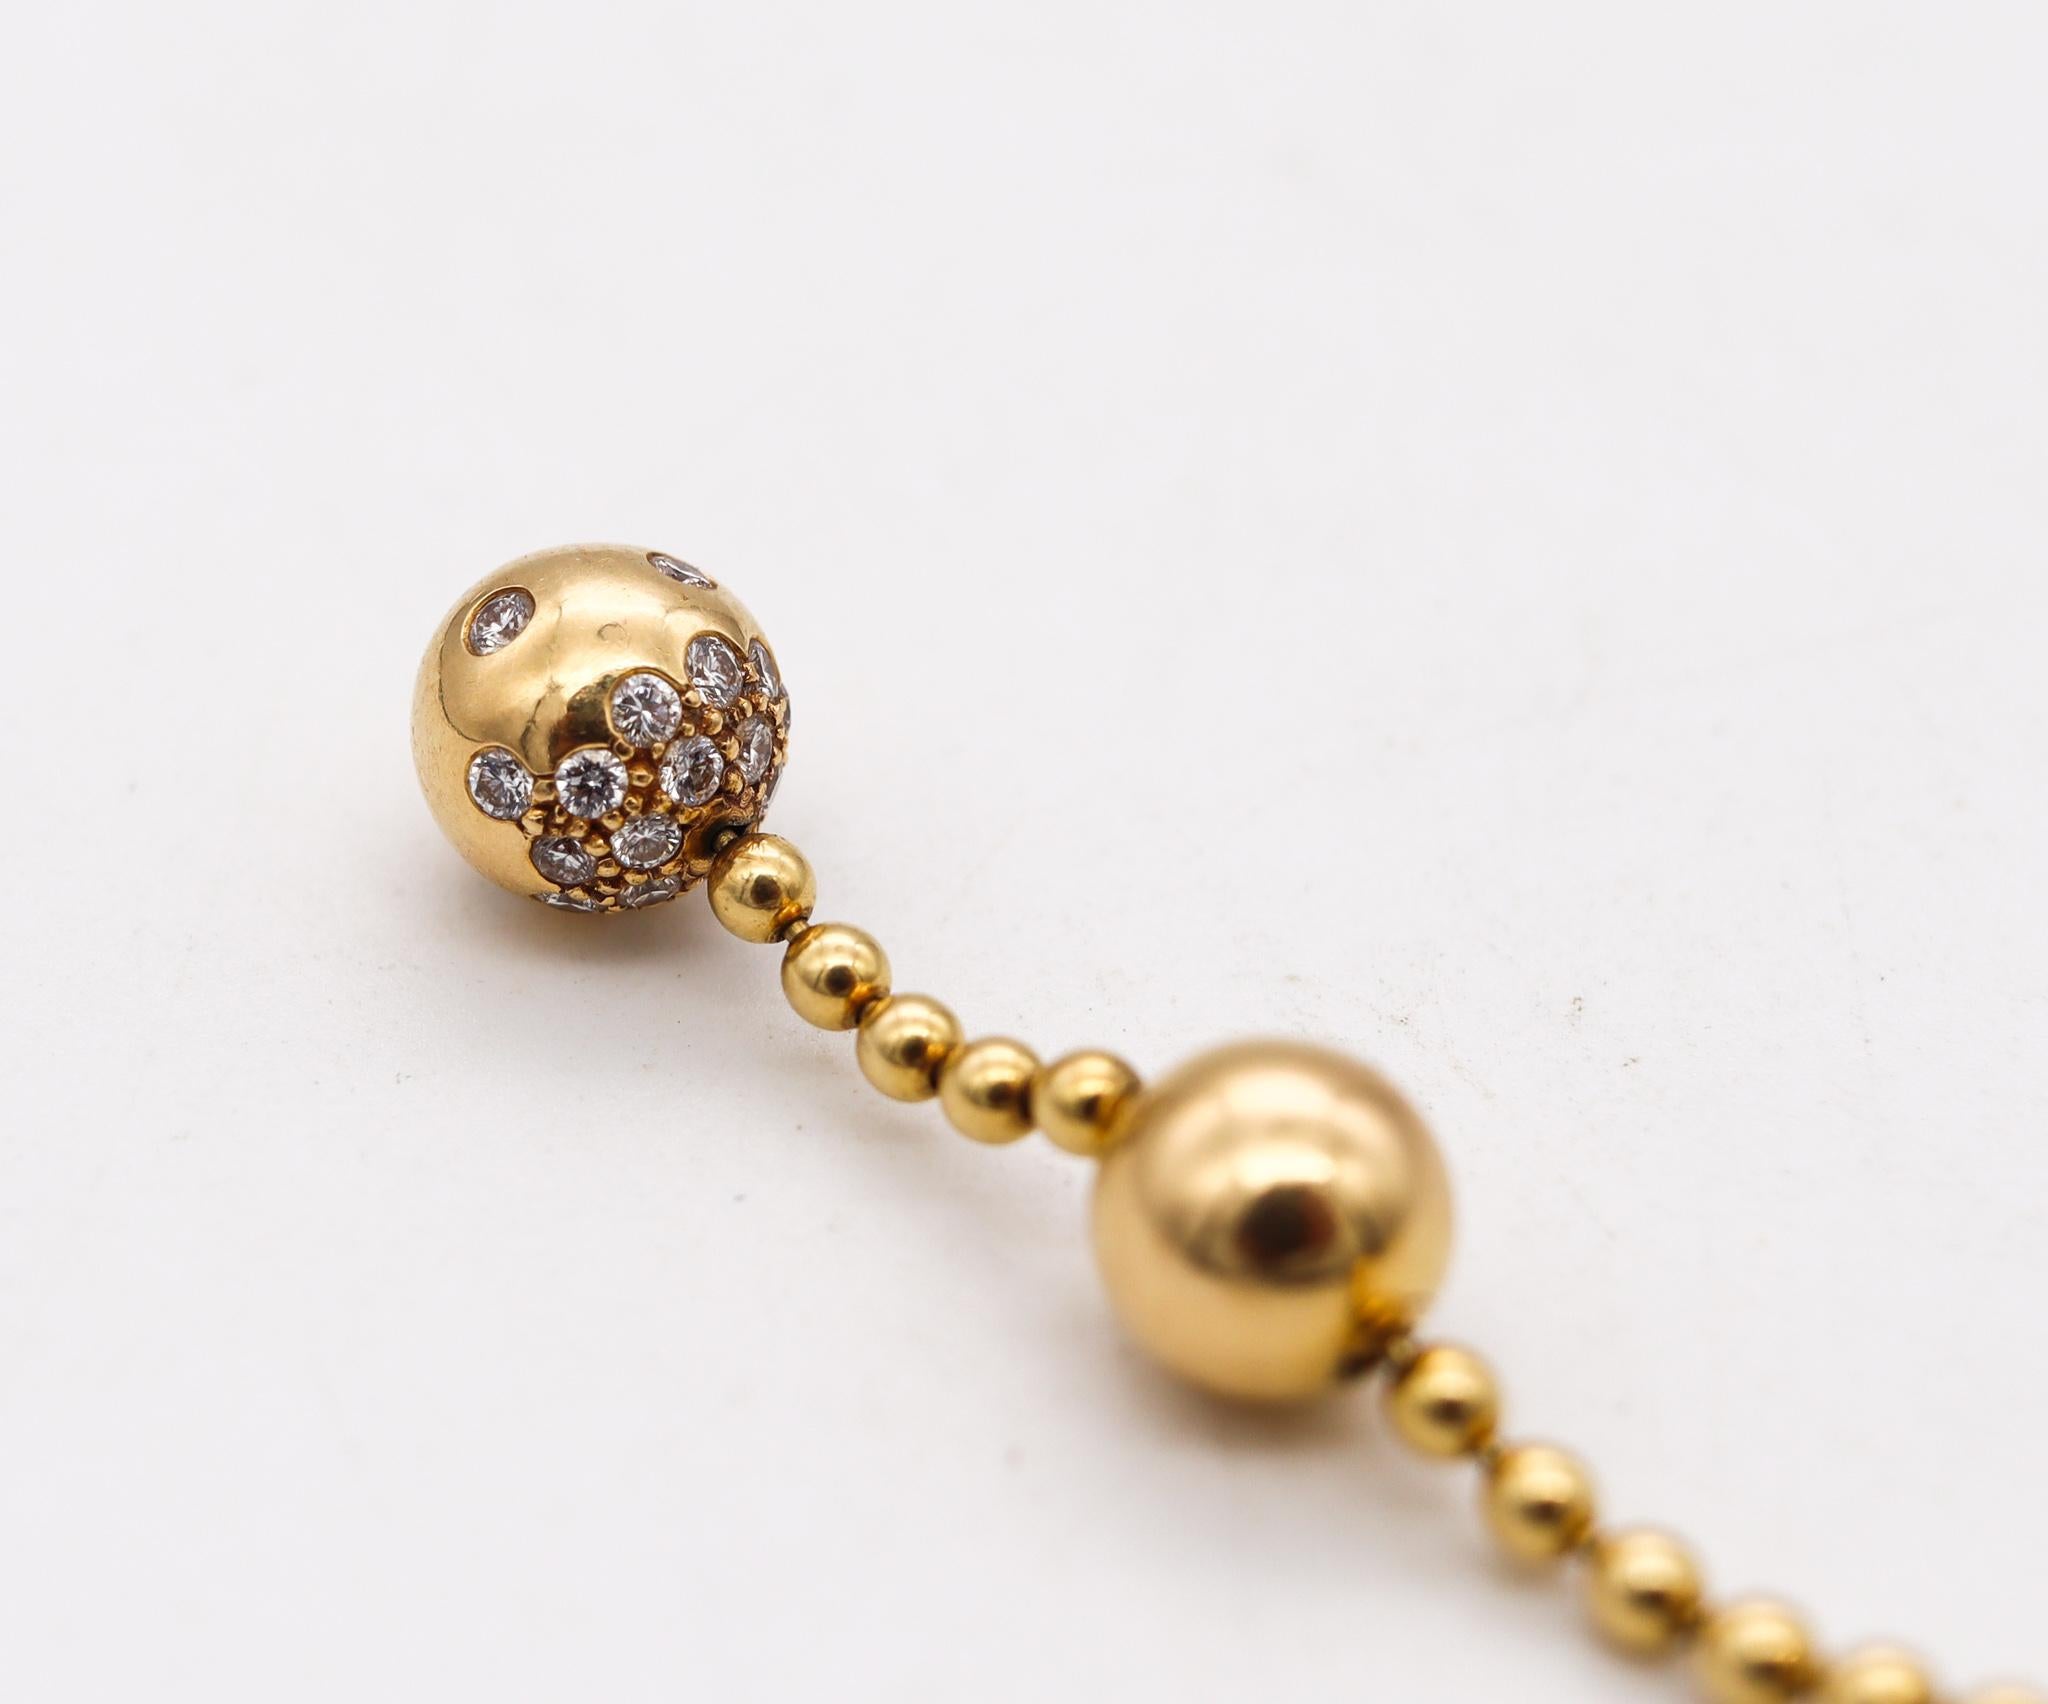 Brilliant Cut Cartier Paris Draperie Decolette Necklace 18Kt Yellow Gold with 25 VVS Diamonds